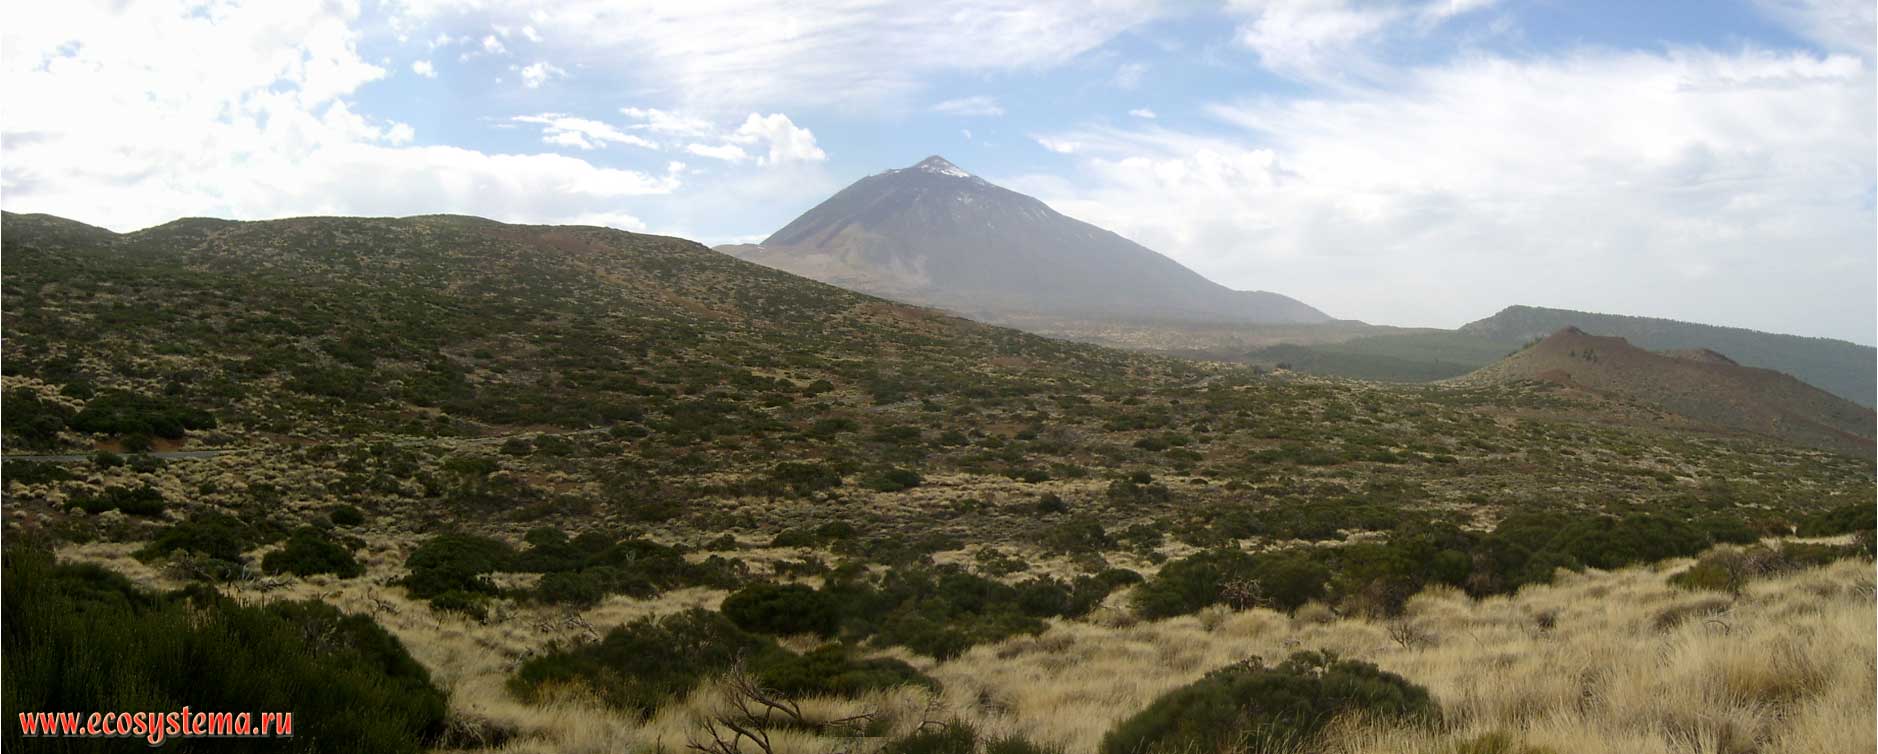 Панорама вулкана Тэйде (3718 м) с северо-восточного края
кальдеры Каньядас. Зона высокогорной ксерофитной растительности
с преобладанием дрока Тейде (Spartocytisus supranubius),
молочая бальзамного (Euphorbia balsamifera) и злаков